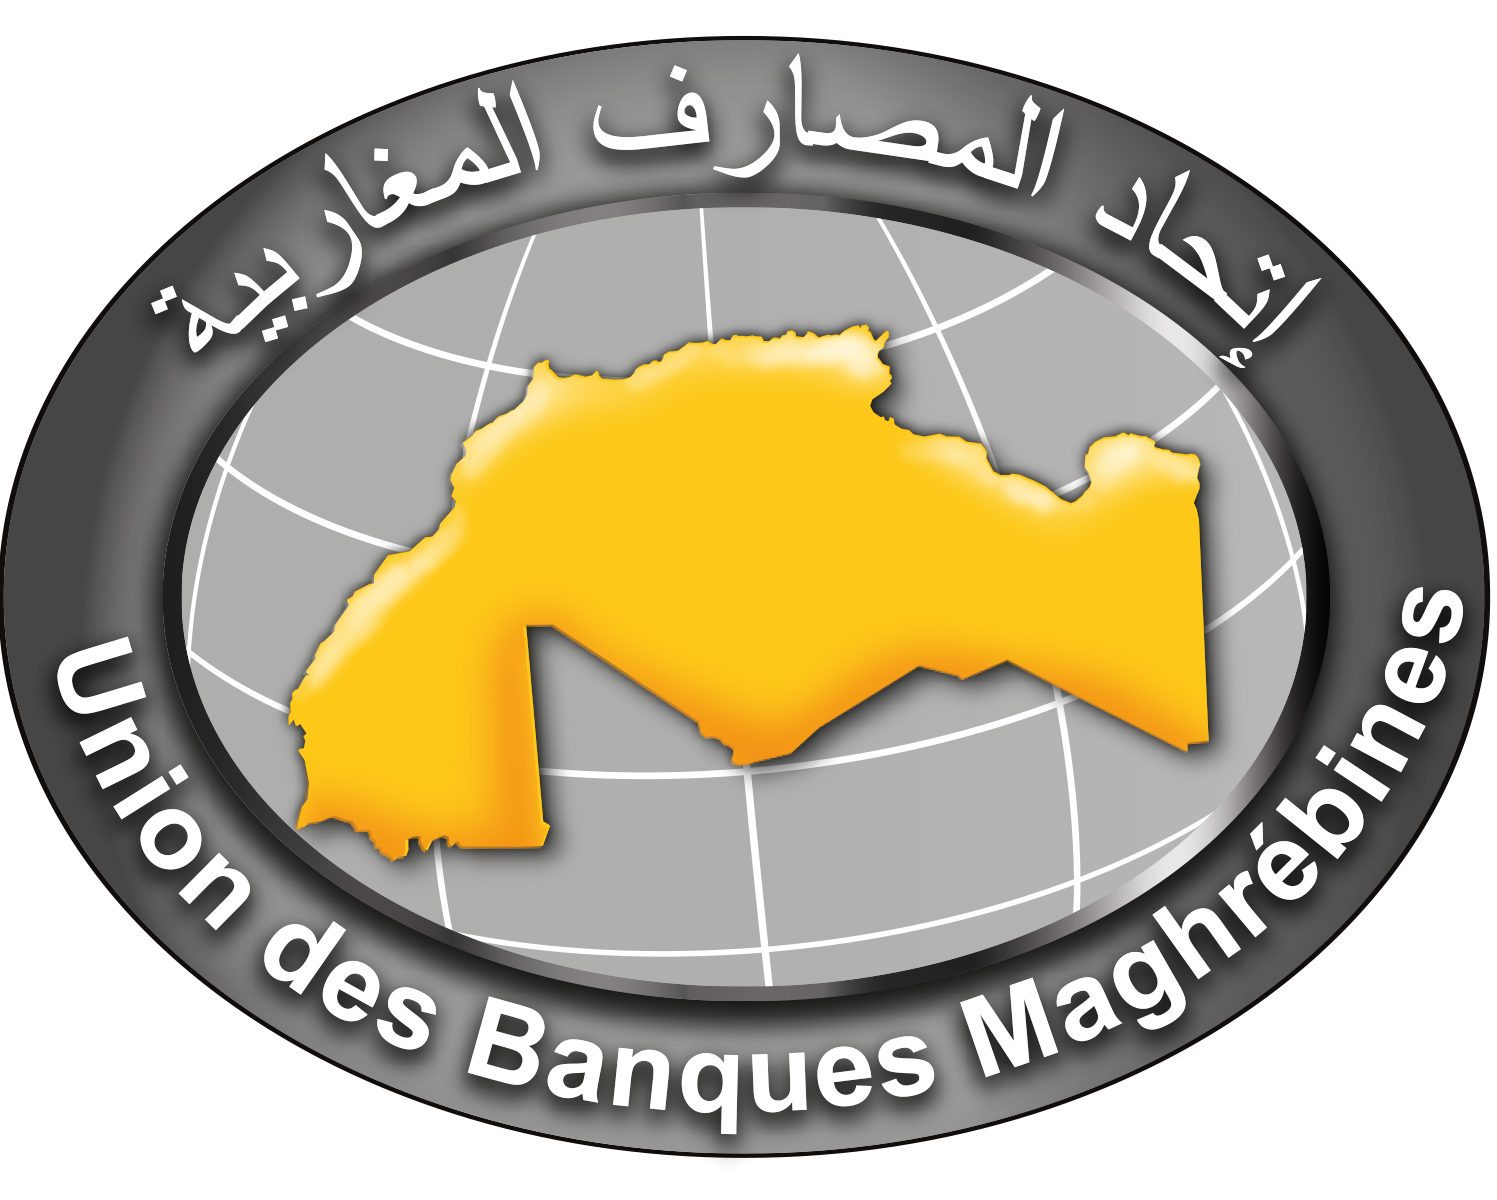 Union des Banques Maghrébines